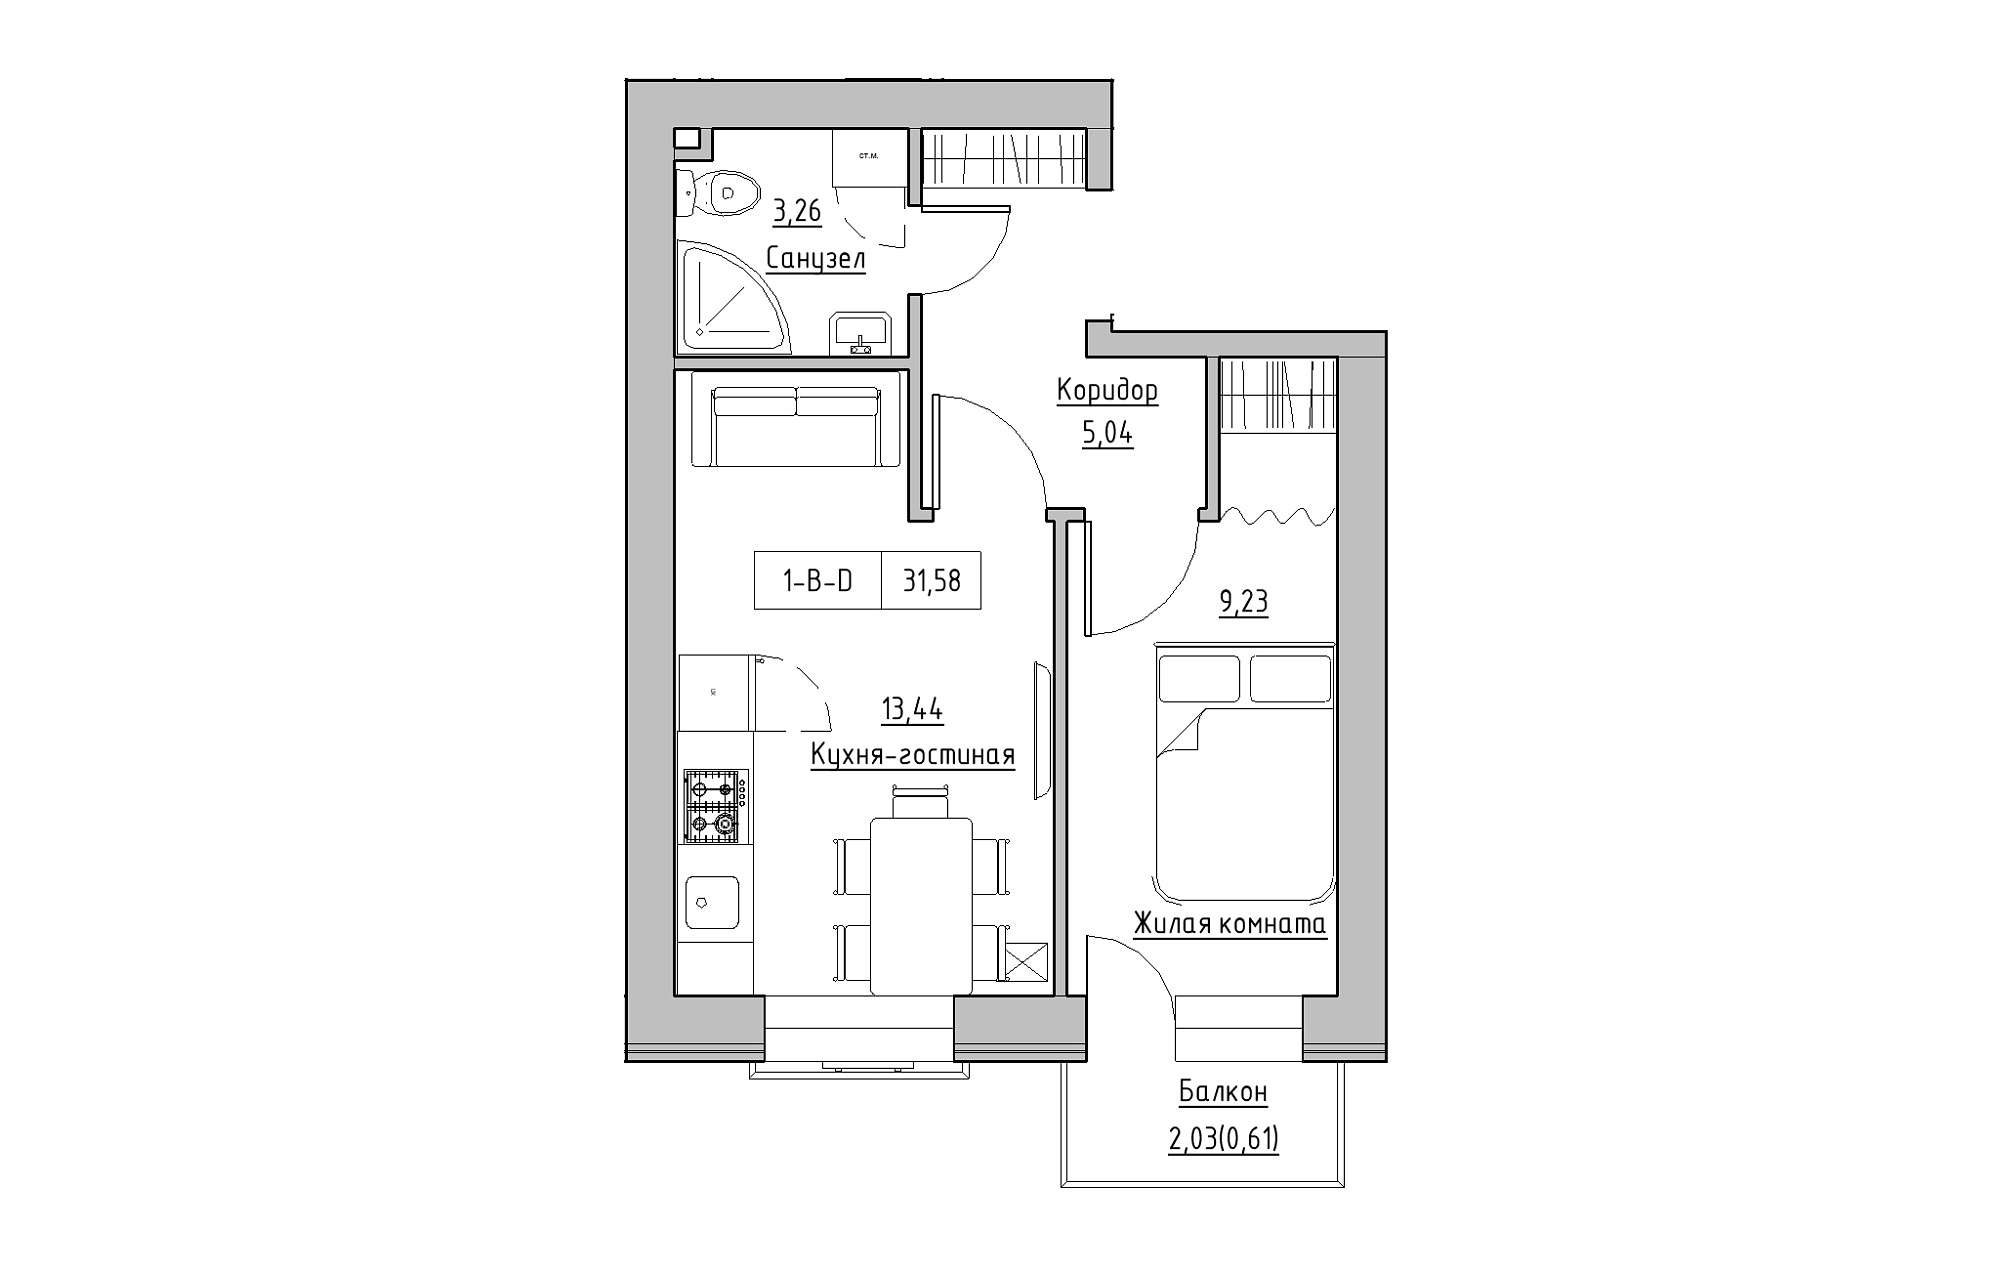 Планировка 1-к квартира площей 31.58м2, KS-018-05/0003.